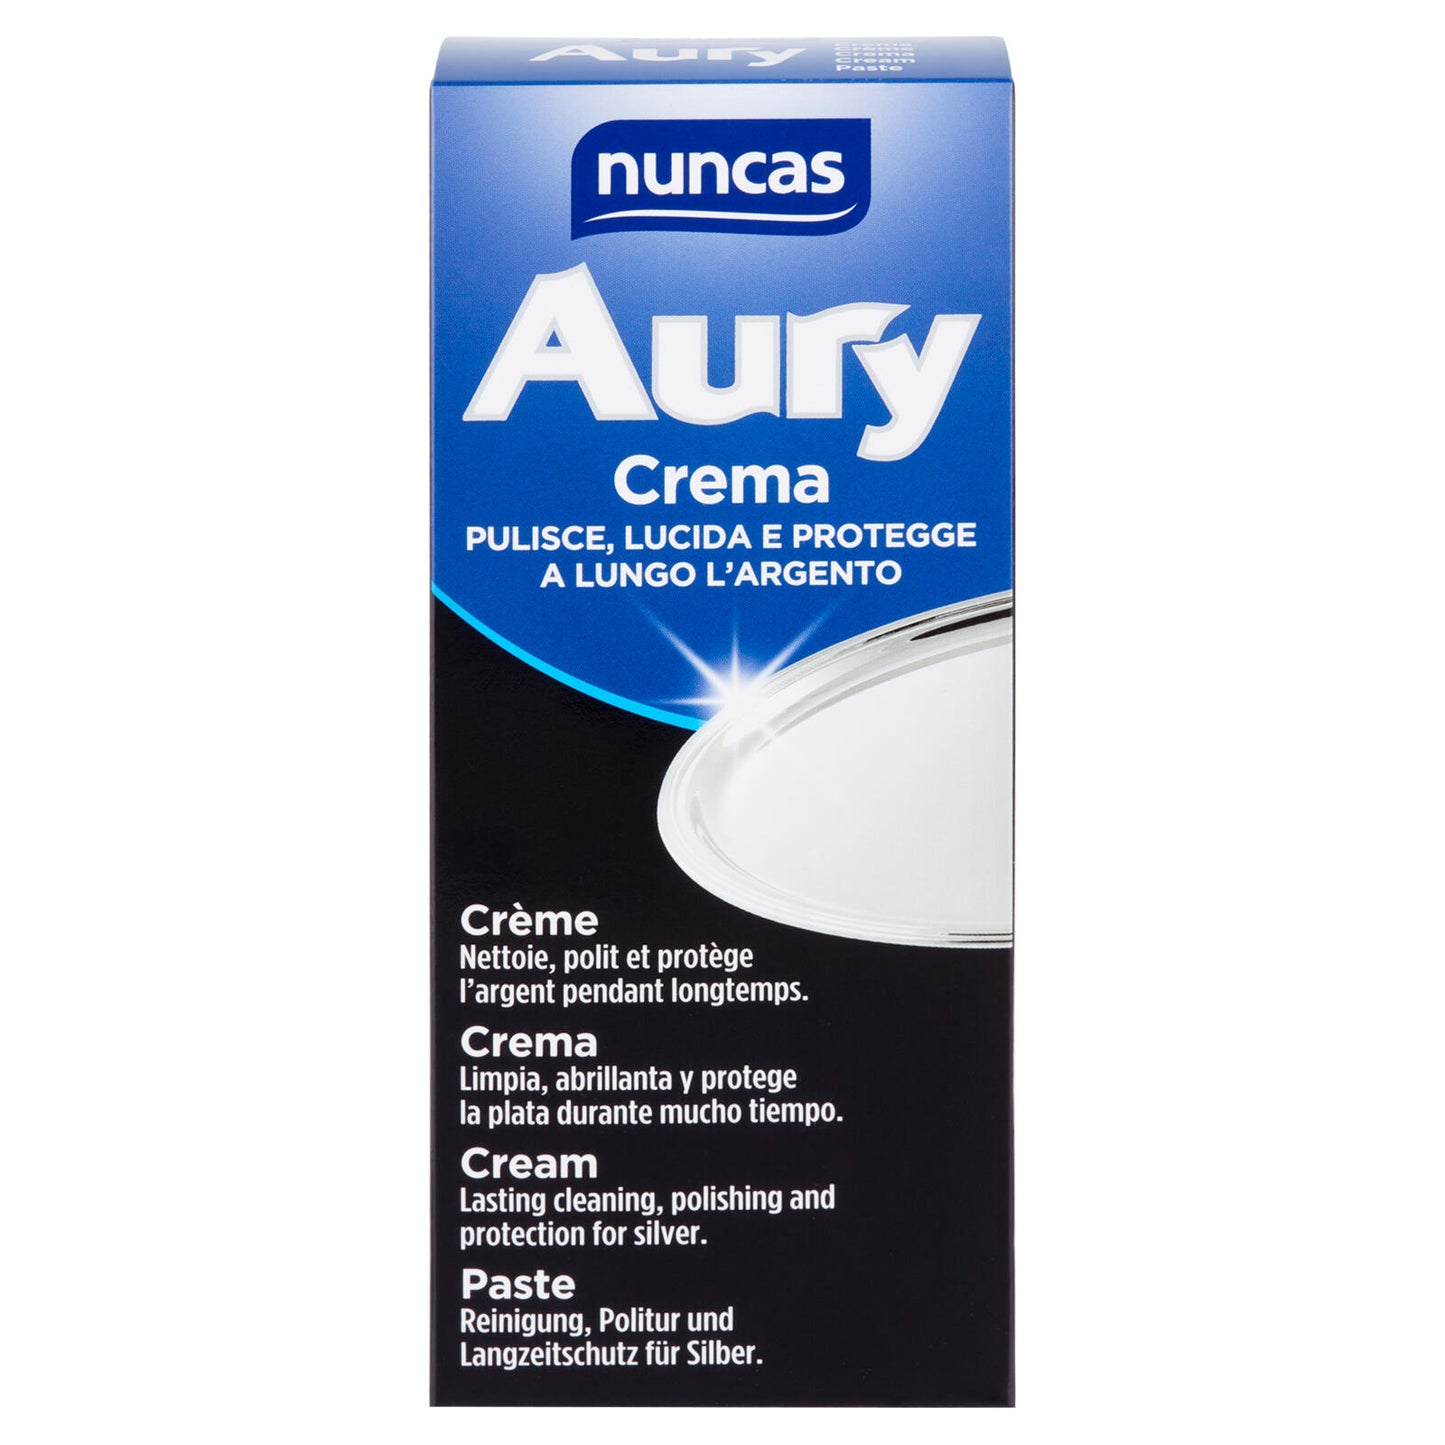 nuncas Aury Crema 250 ml